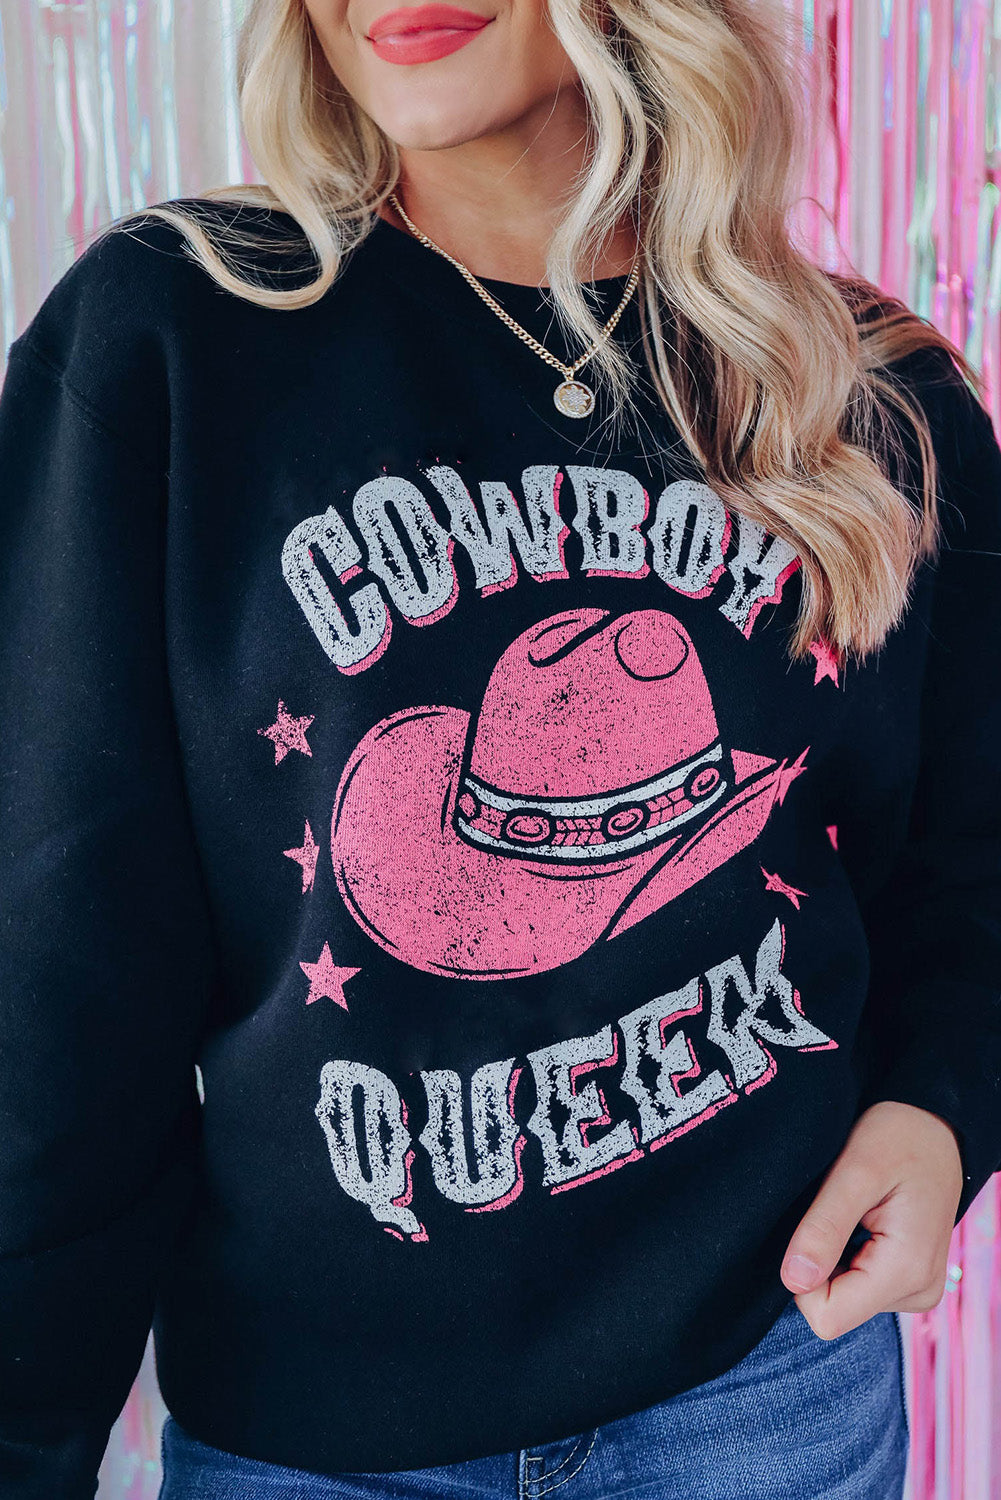 COWBOY QUEEN Hat Graphic Print Pullover Sweatshirt